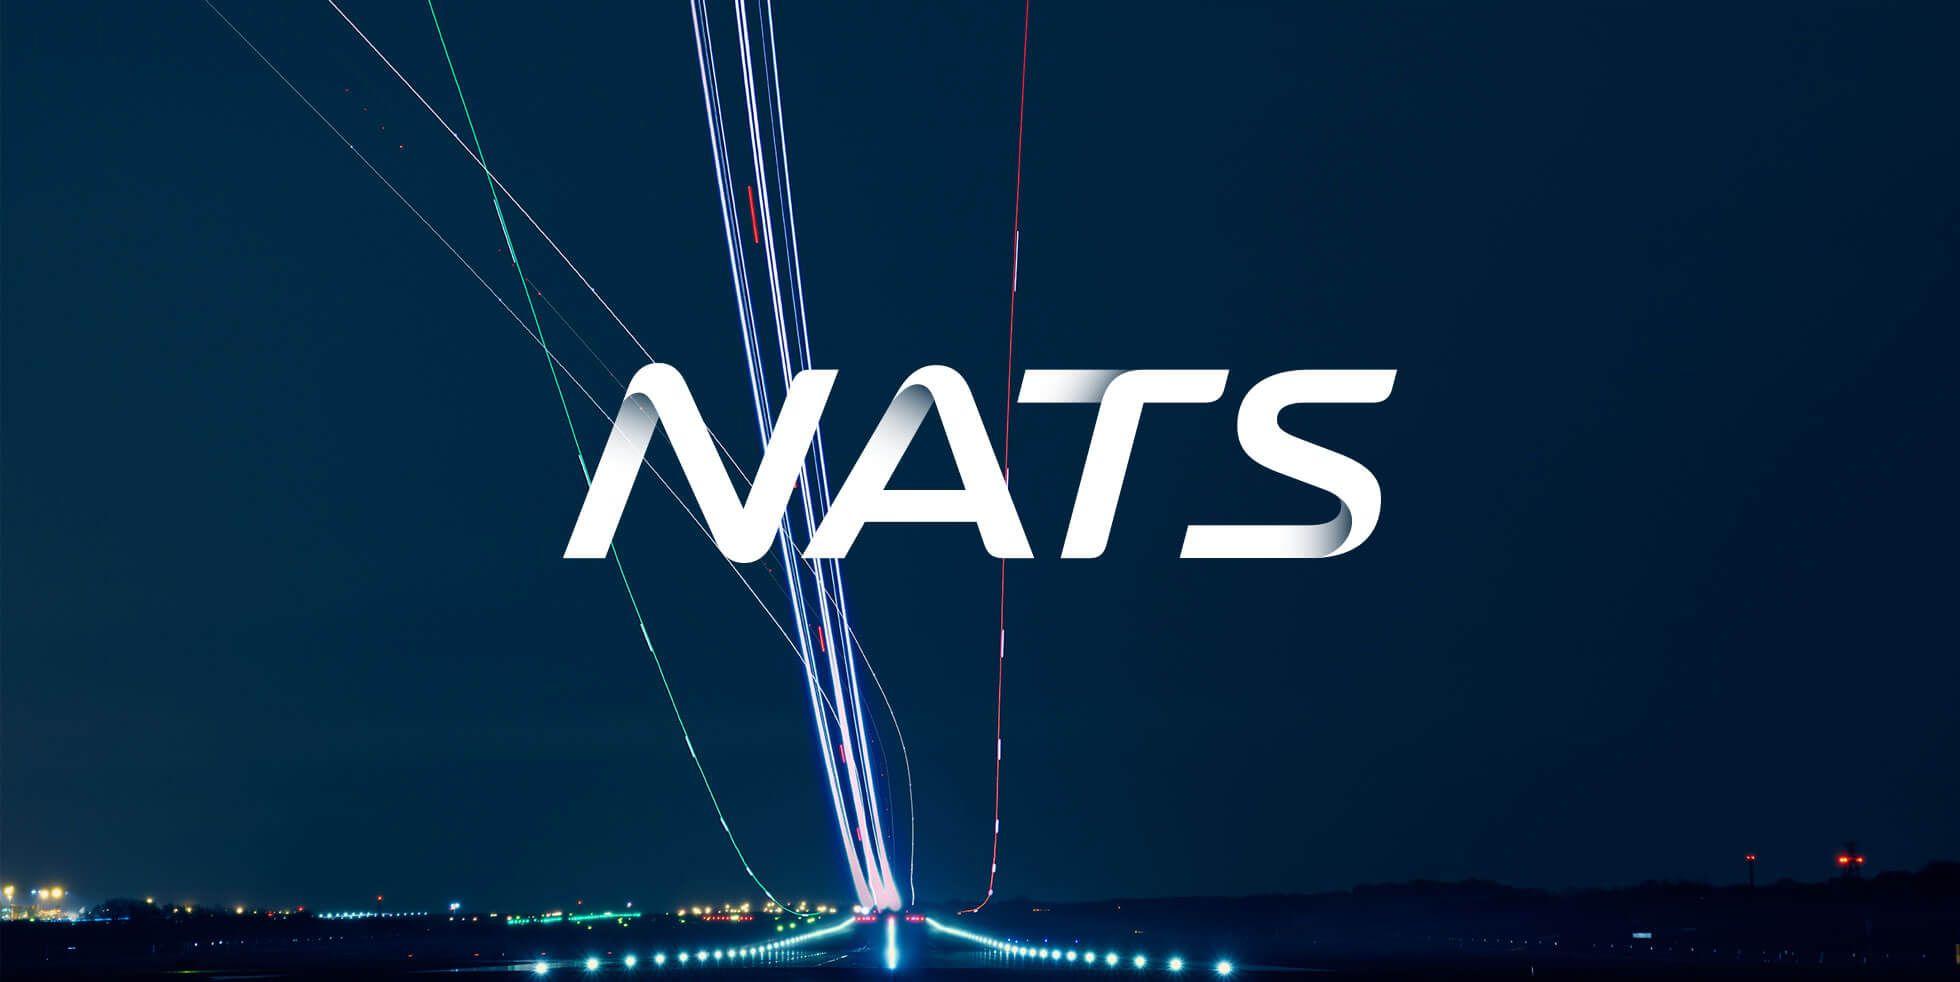 Nats Logo - NATS logo - sUAS News - The Business of Drones